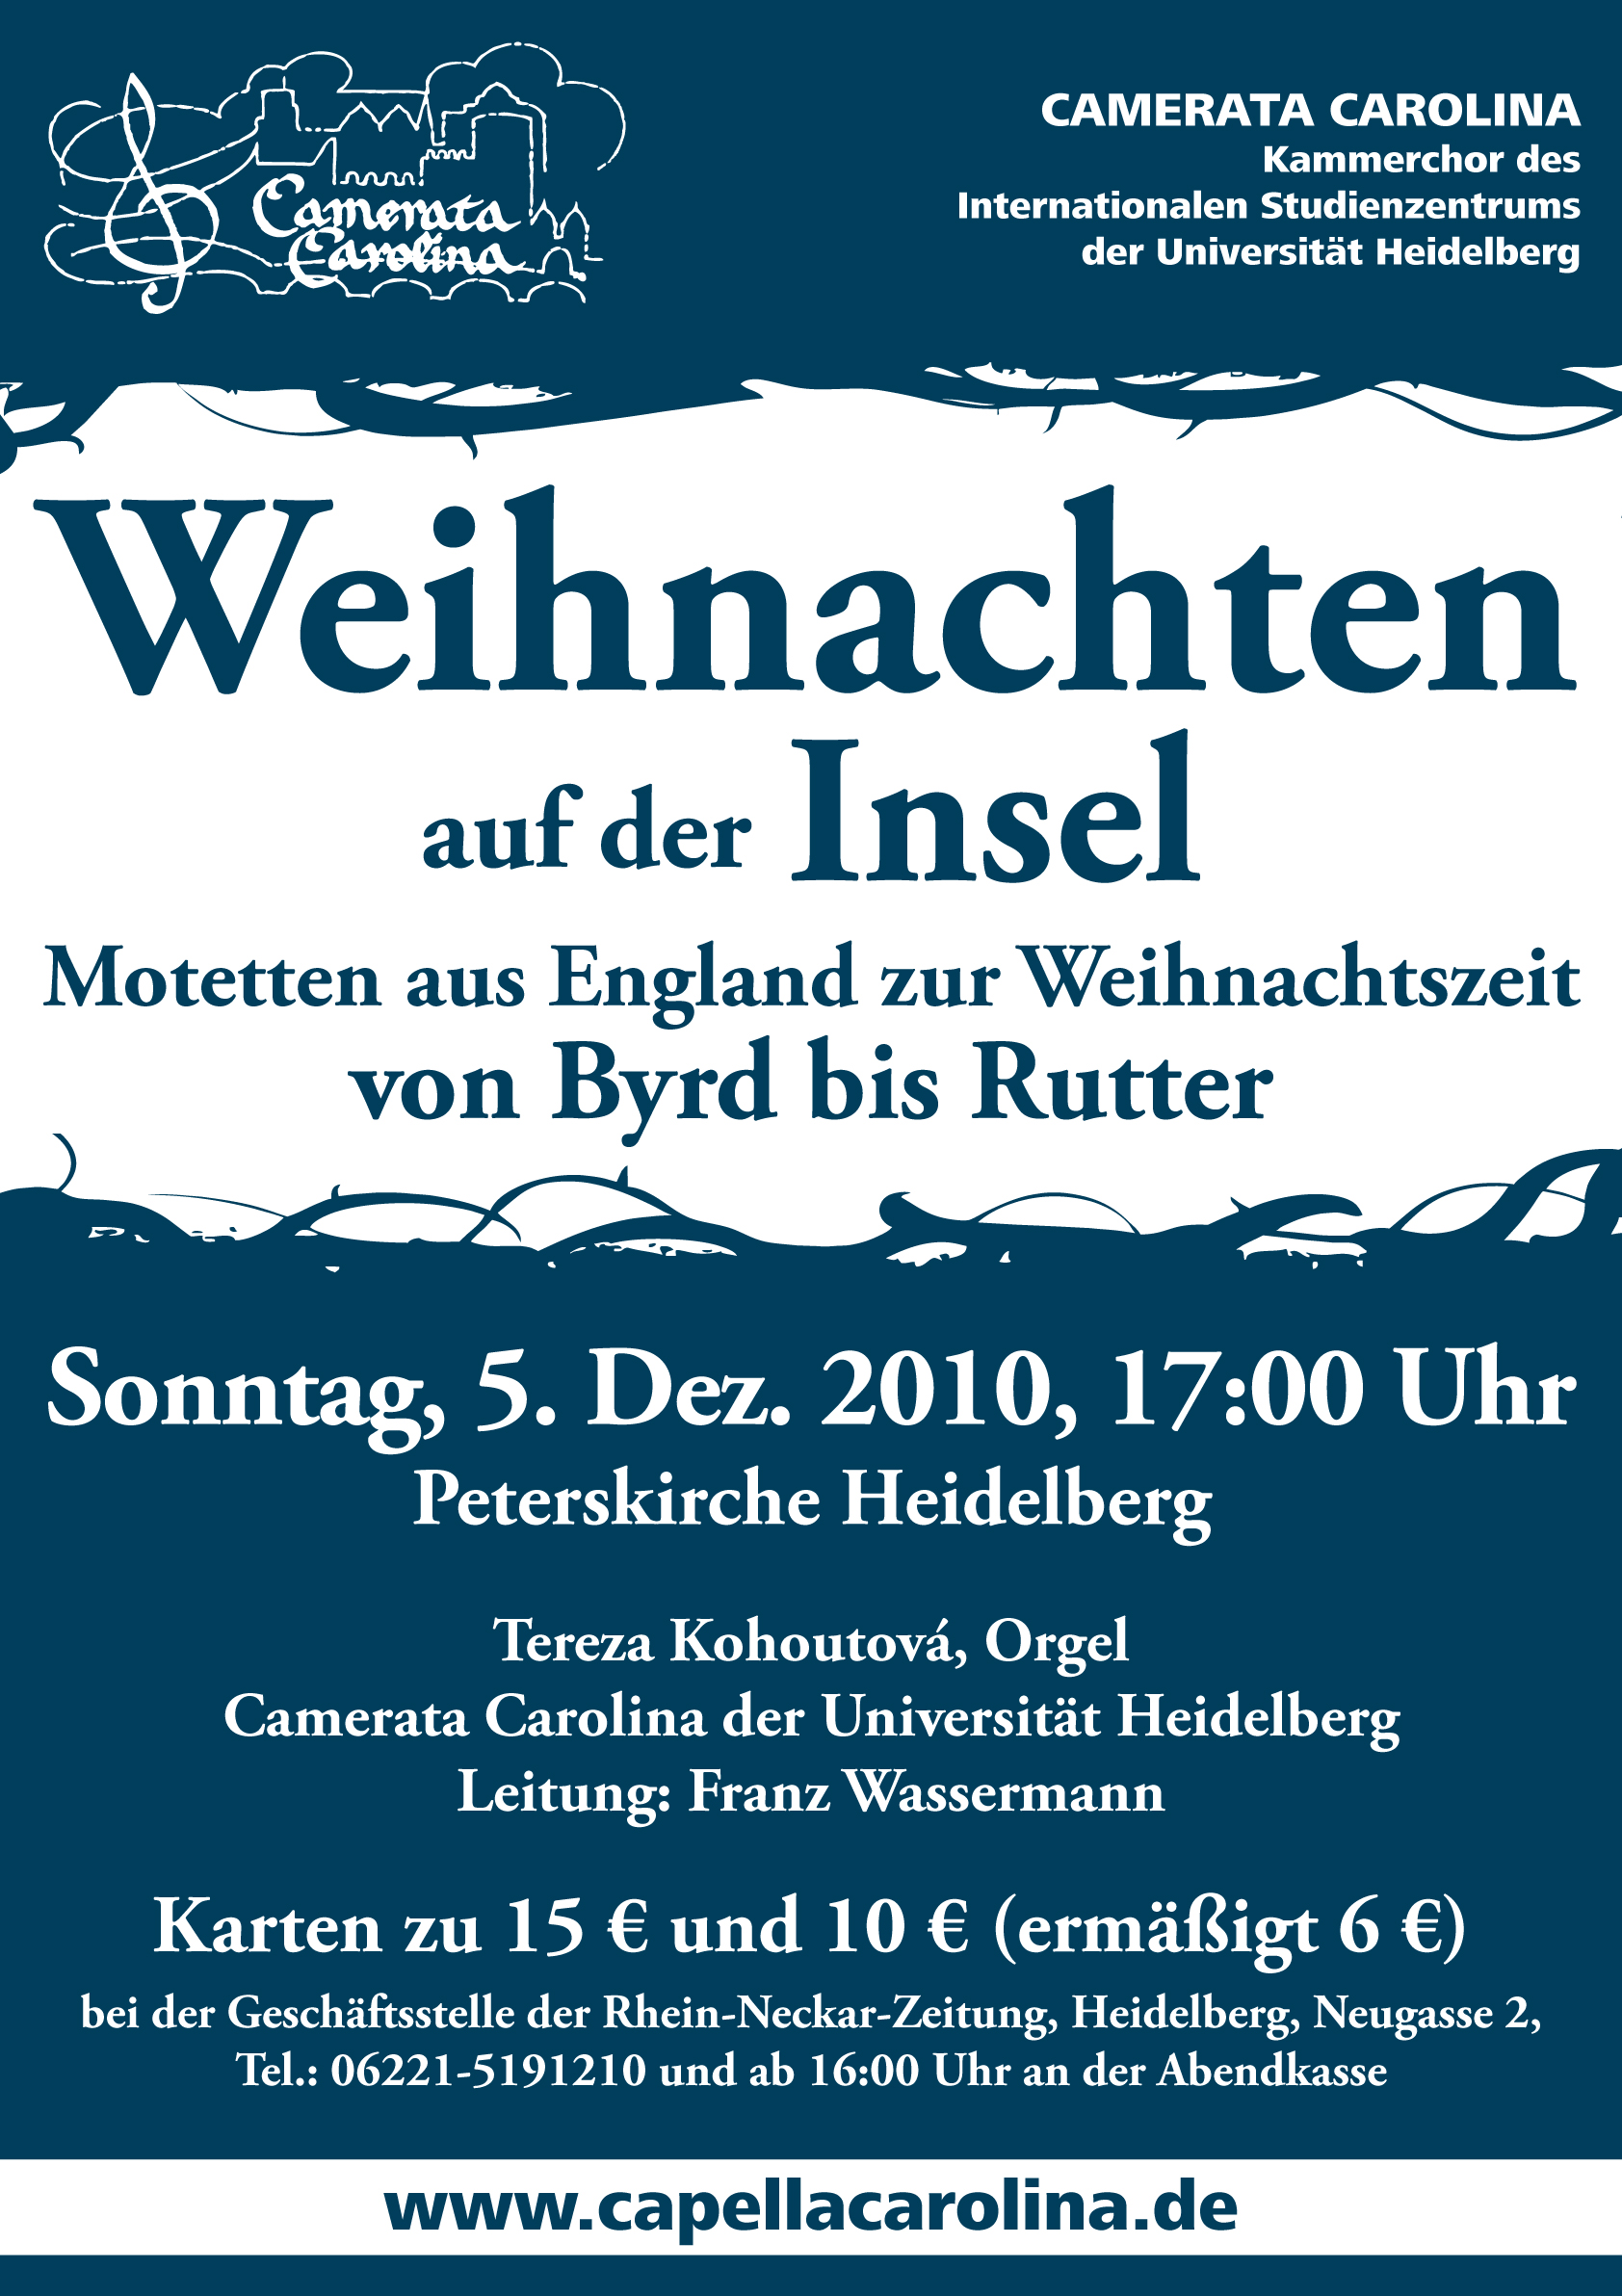 20101205 Plakat A1 Camerata Weihnachten Byrd Rutter Heidelberg 1_